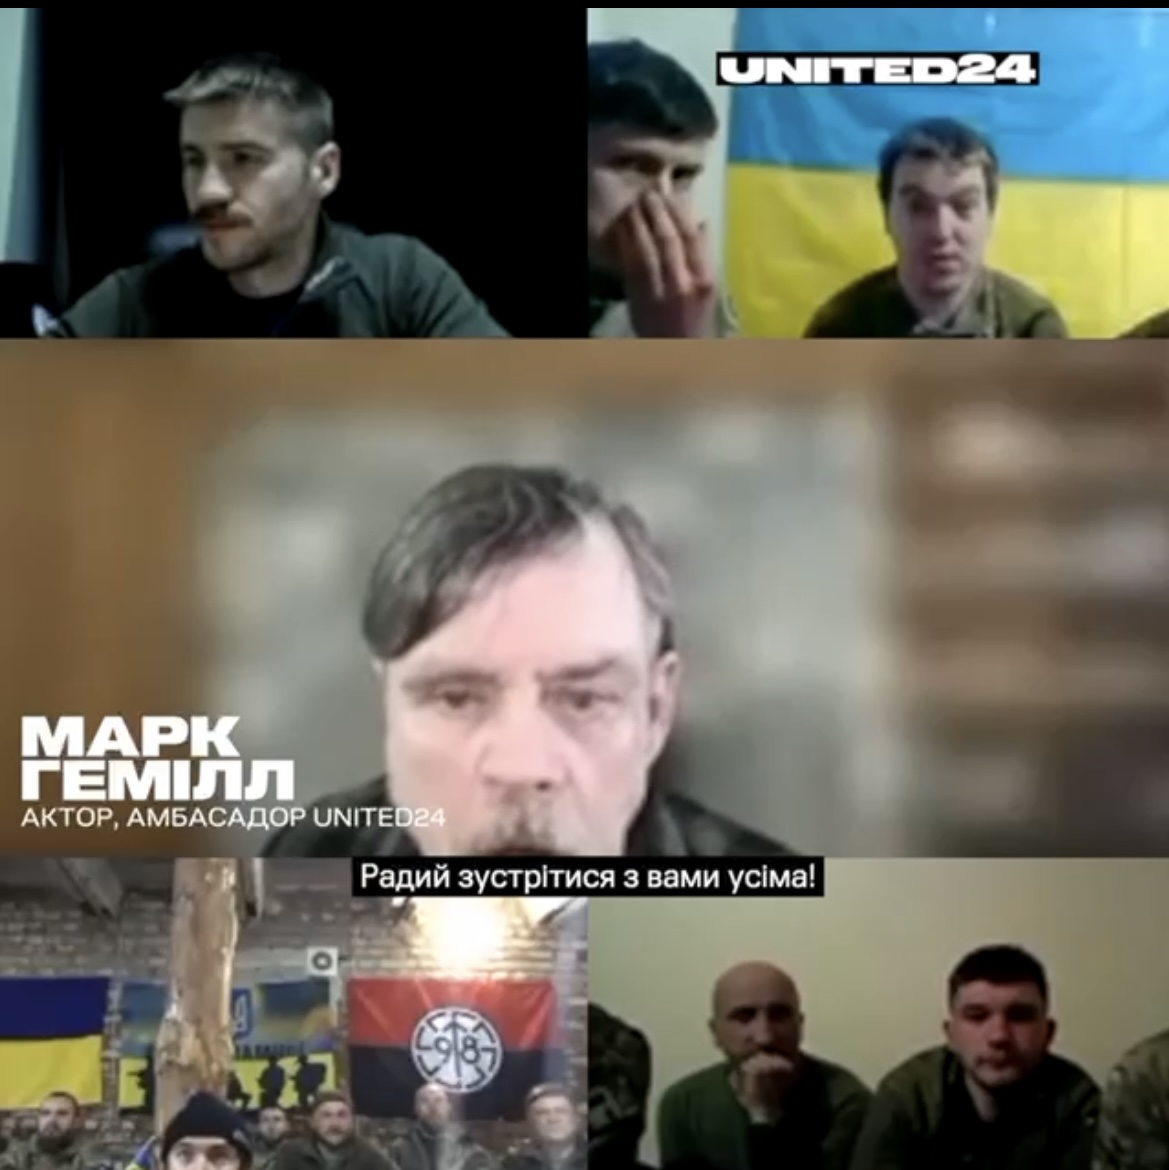 Звезда "Звездных войн" пообщался с украинскими защитниками: я играю воина в кино, а вы настоящие герои настоящей войны